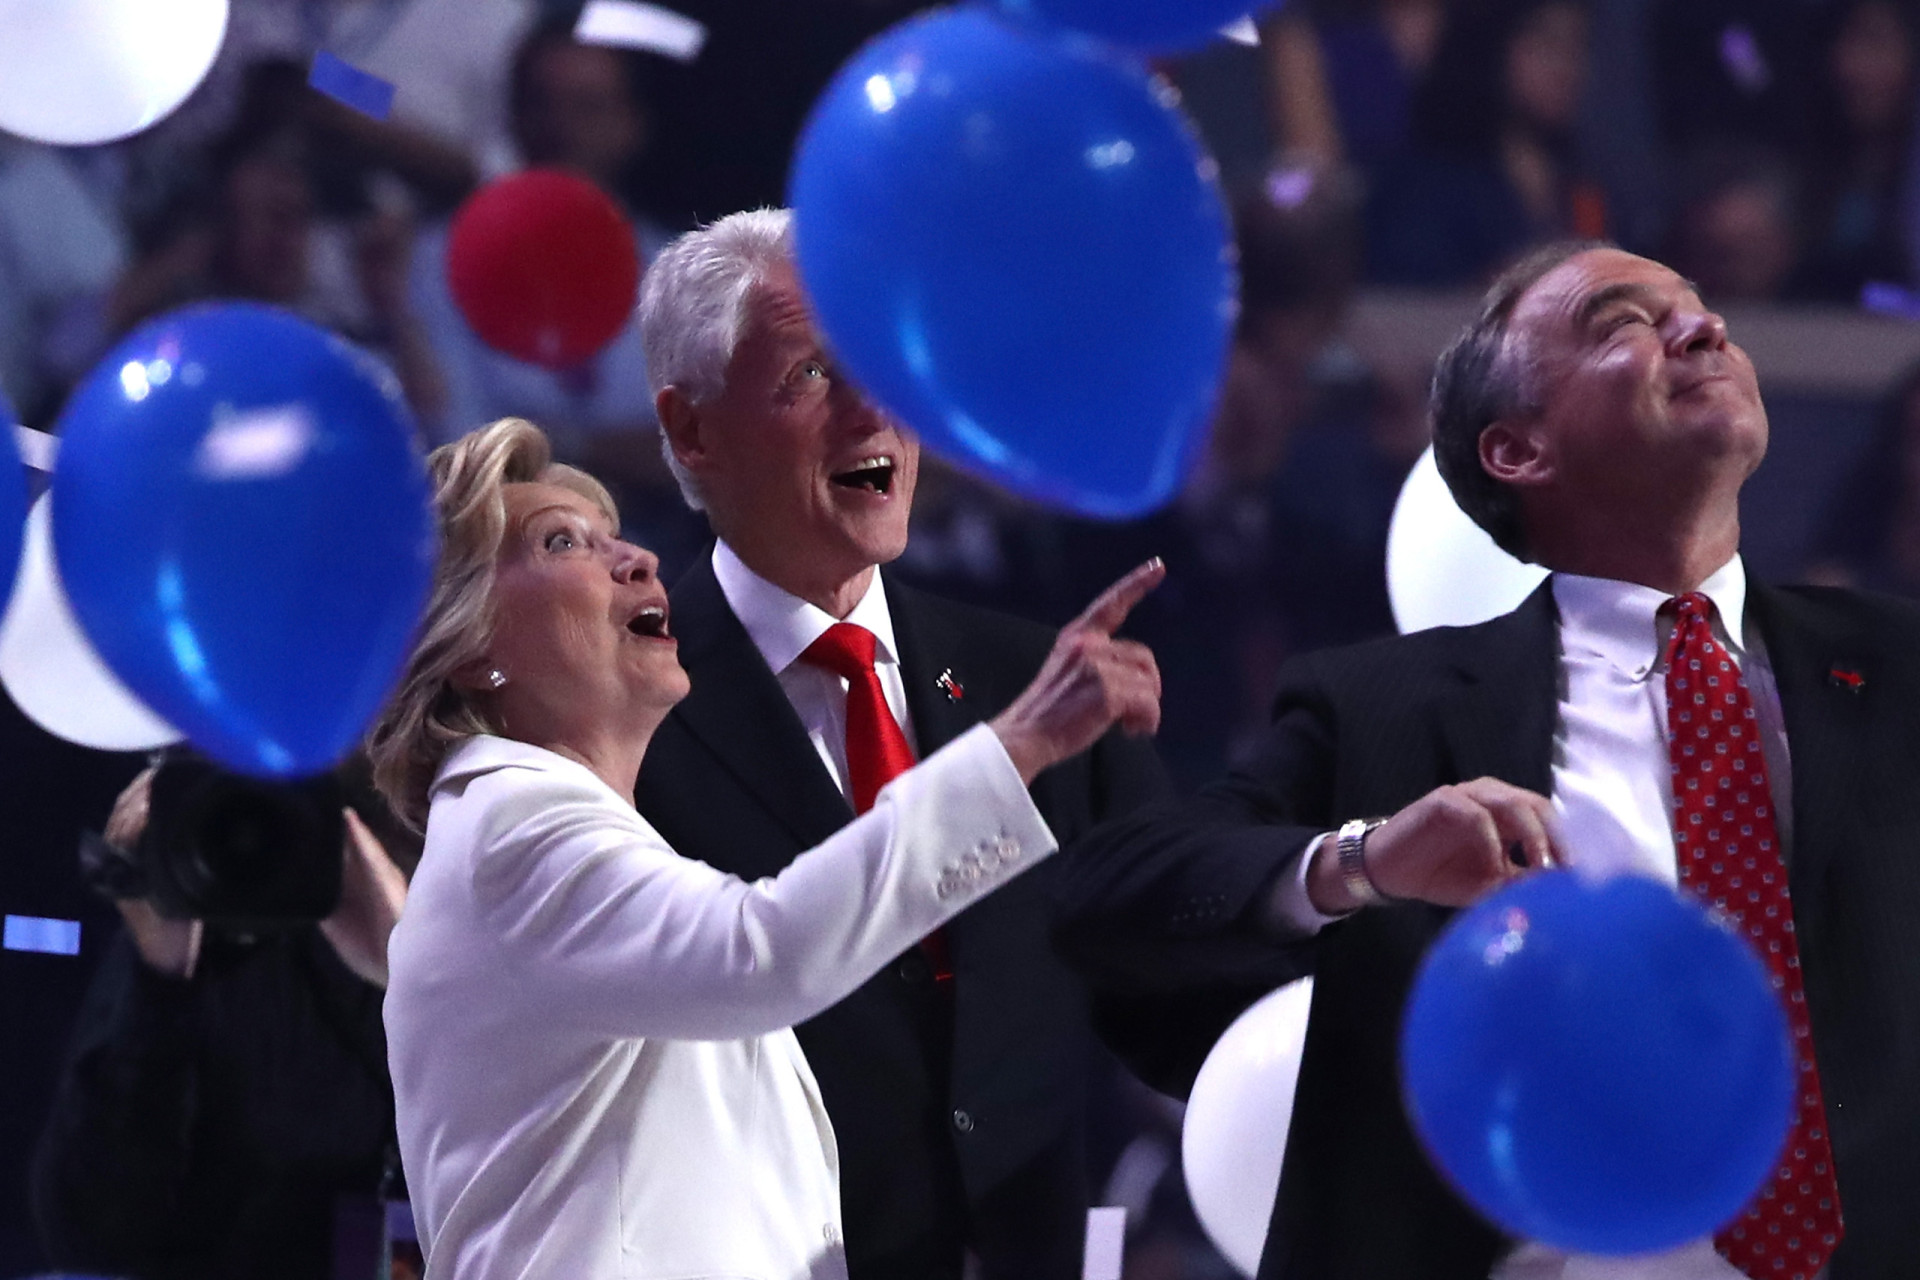 <p>Auf dem nationalen Parteitag der Demokraten 2016 schreibt Hillary Clinton als erste weibliche Präsidentschaftskandidatin einer bedeutenden Partei Geschichte. Auf der Party am Ende des Parteitags staunen die Clintons über die Luftballons.</p><p>Sie können auch mögen:<a href="https://de.starsinsider.com/n/340488?utm_source=msn.com&utm_medium=display&utm_campaign=referral_description&utm_content=689702"> Diese Stars verloren auf tragische Weise Familienmitglieder</a></p>